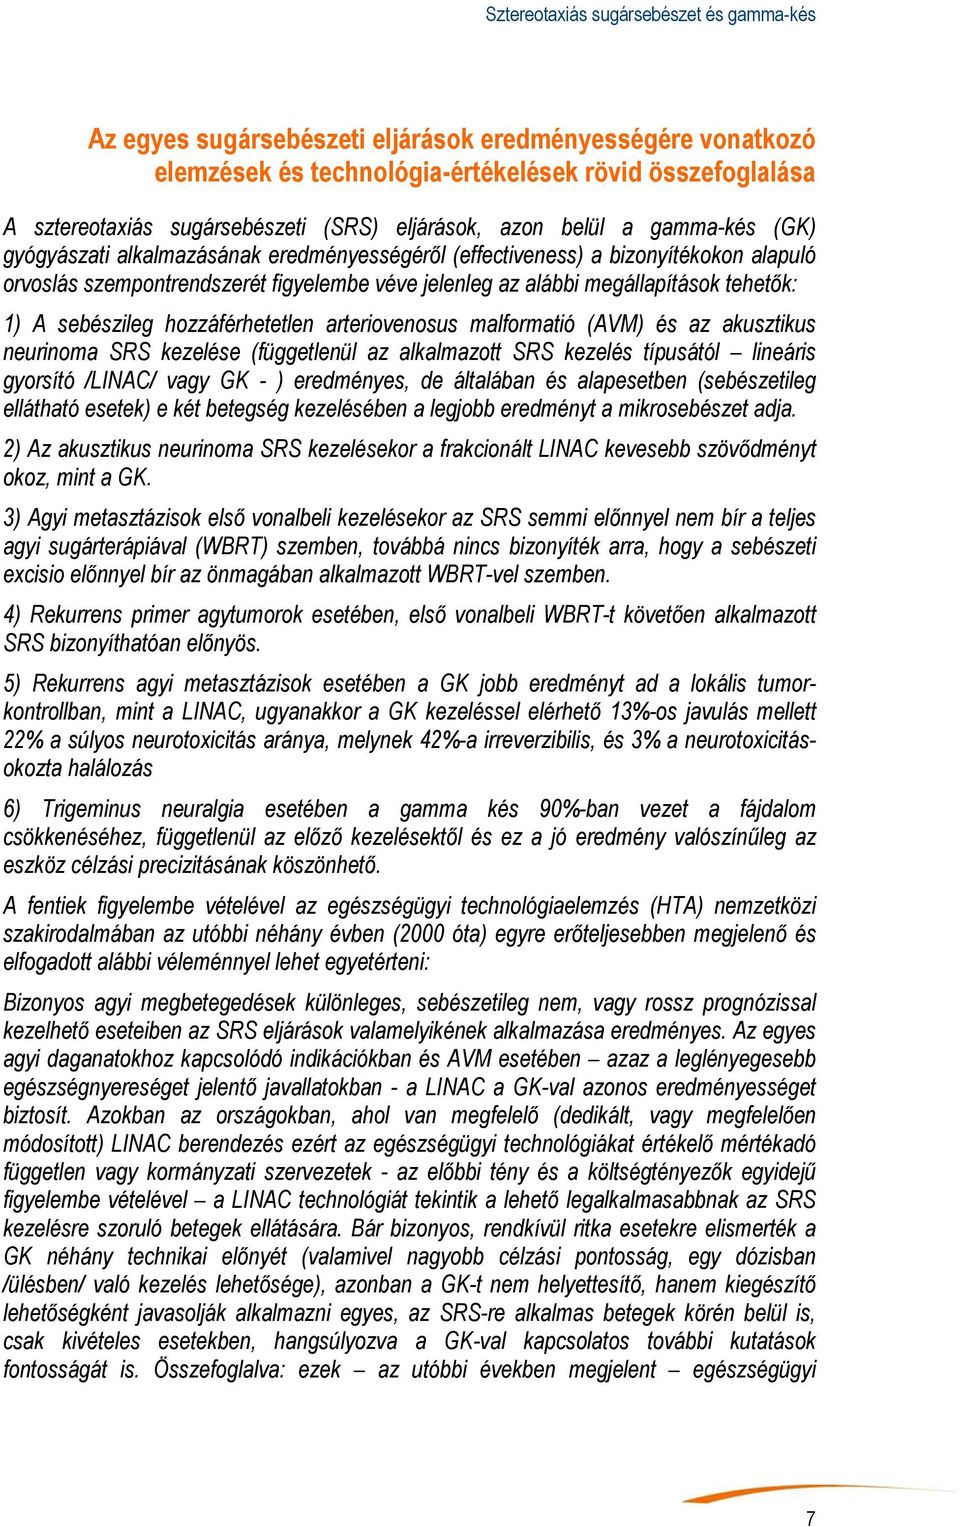 Sztereotaxiás sugársebészet és gamma-kés - PDF Ingyenes letöltés